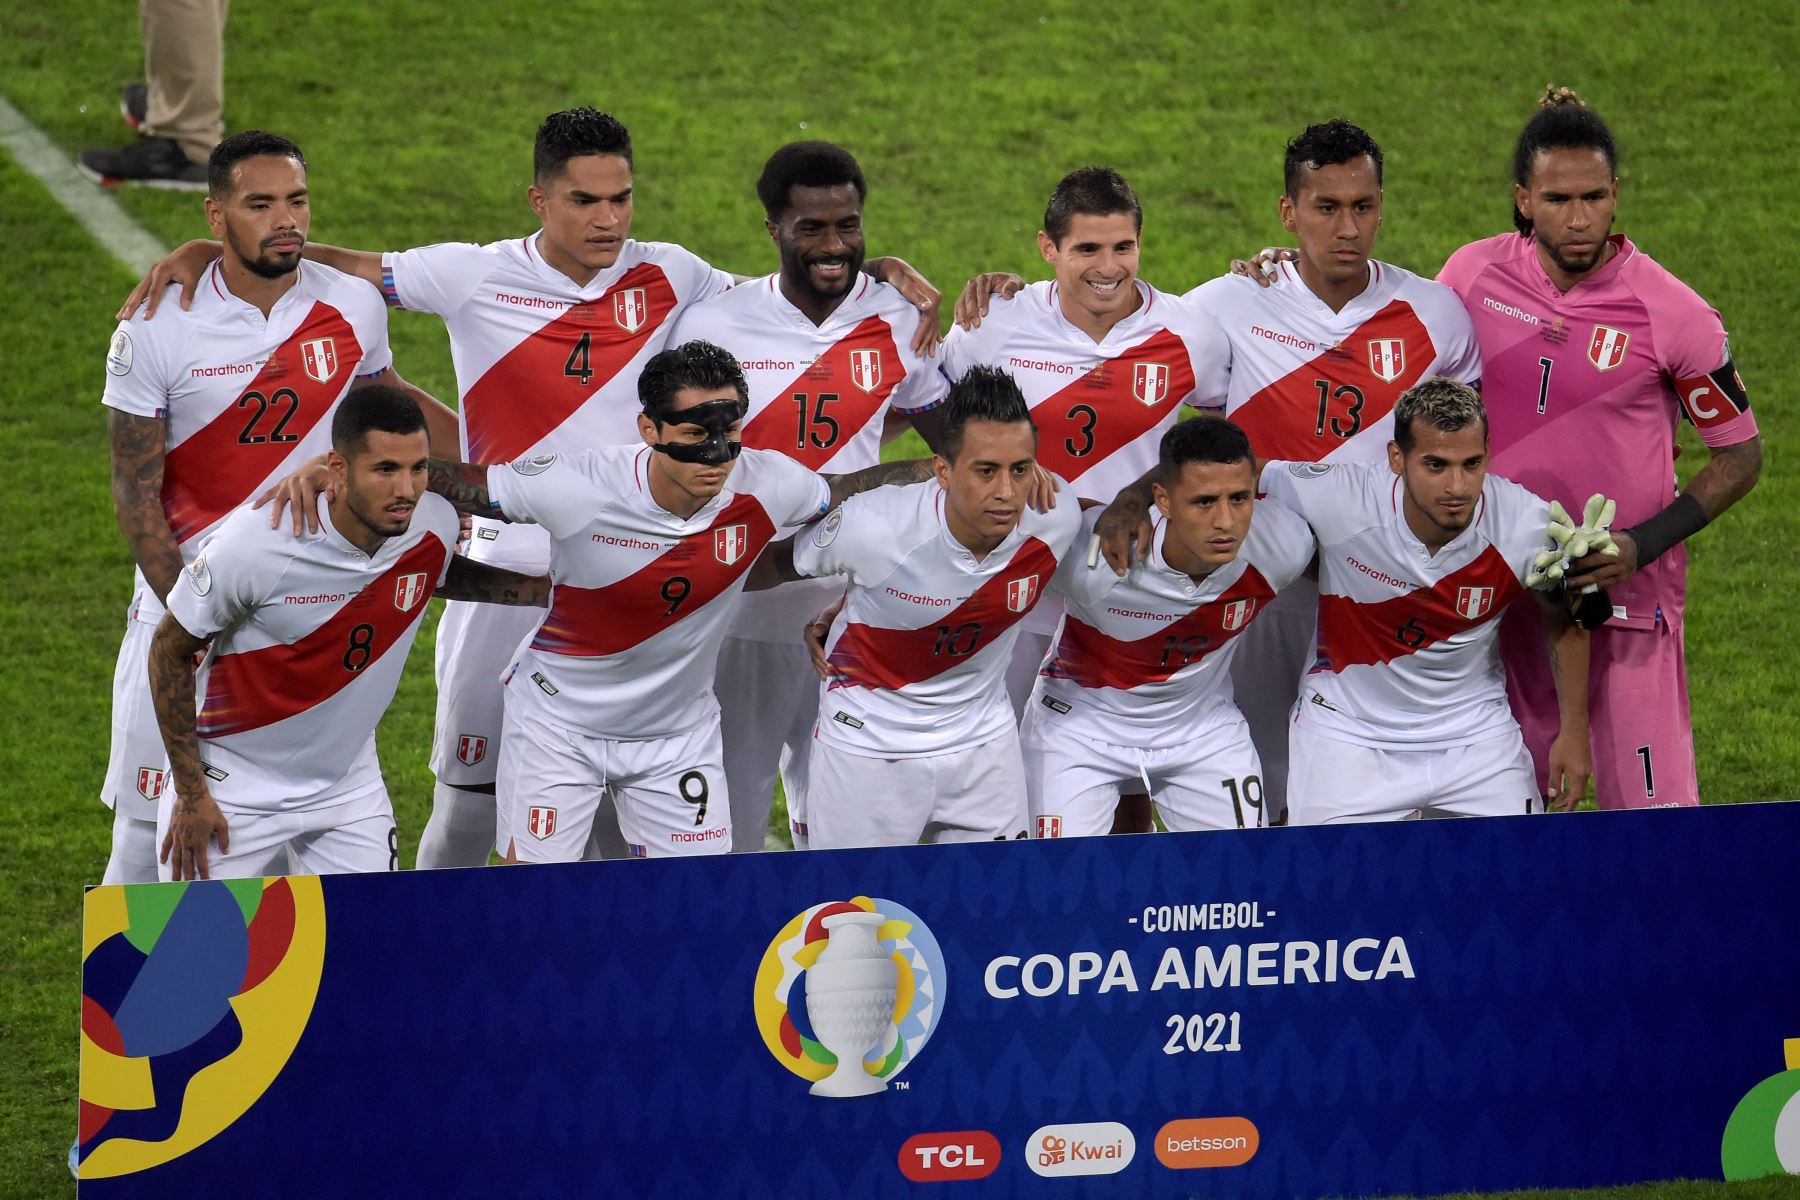 La selección de fútbol de Perú posa para una foto antes del inicio de la semifinal del torneo de fútbol de la Copa América Conmebol 2021 entre Brasil y Perú en el Estadio Nilton Santos en Río de Janeiro, Brasil.
Foto: AFP